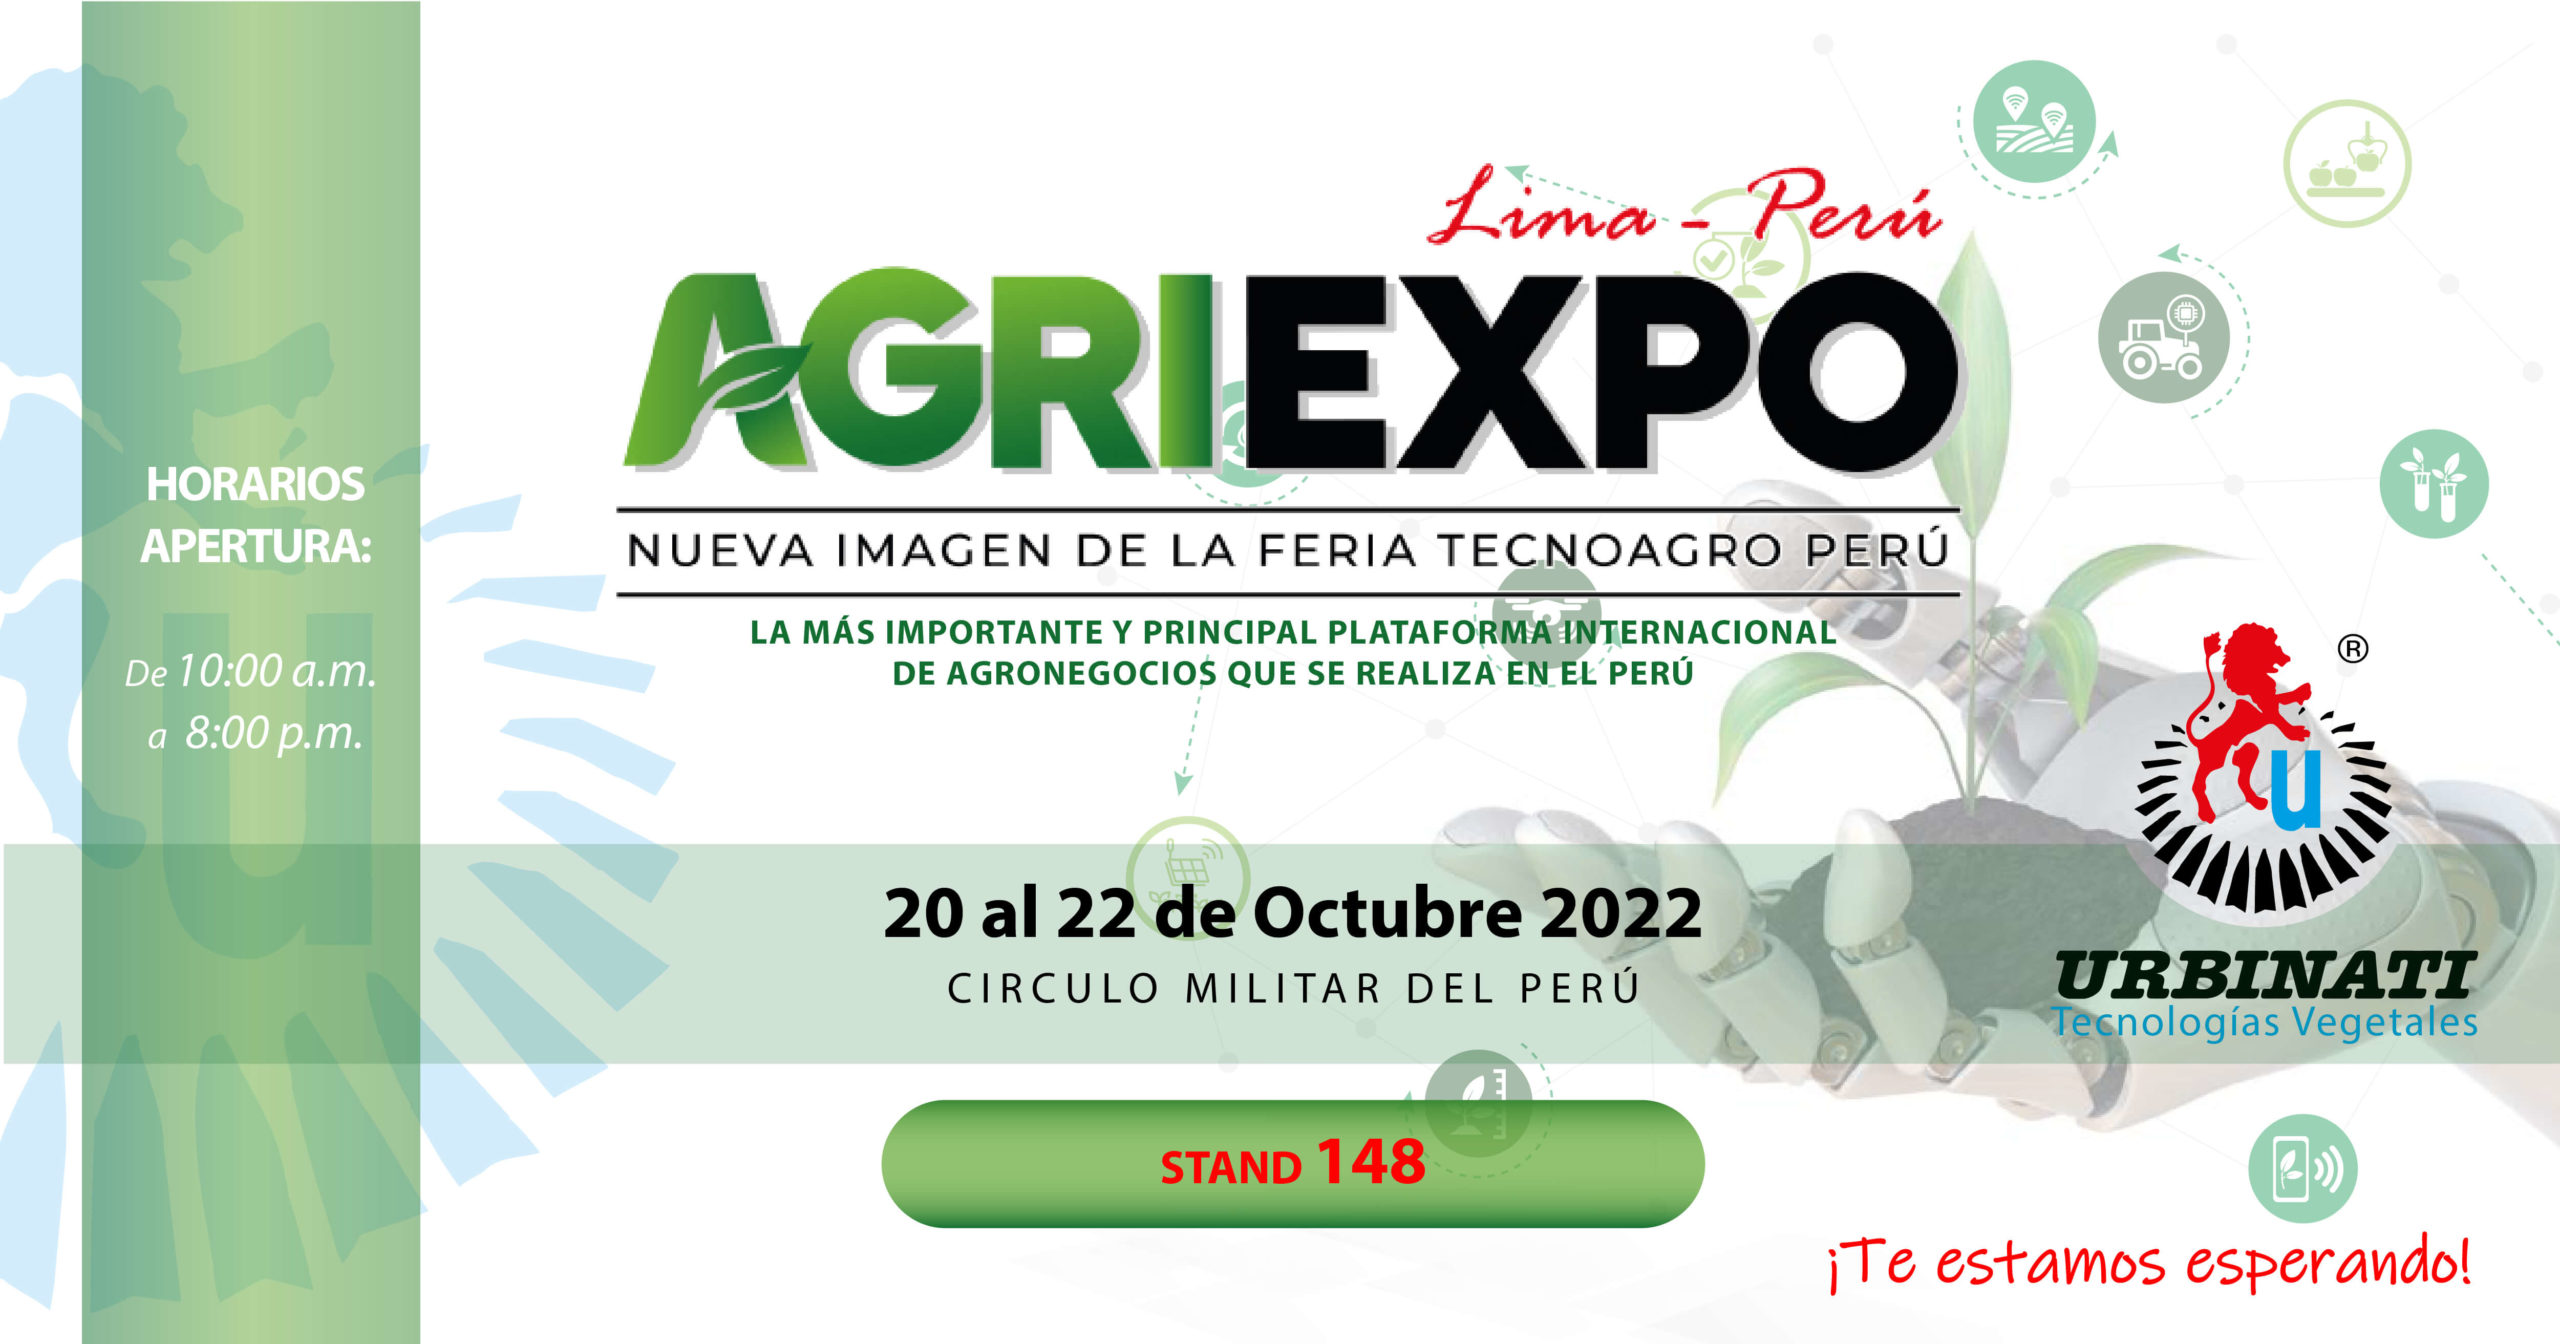 Invitación feria AGRIEXPO 20-22 de octubre de 2022 Perú